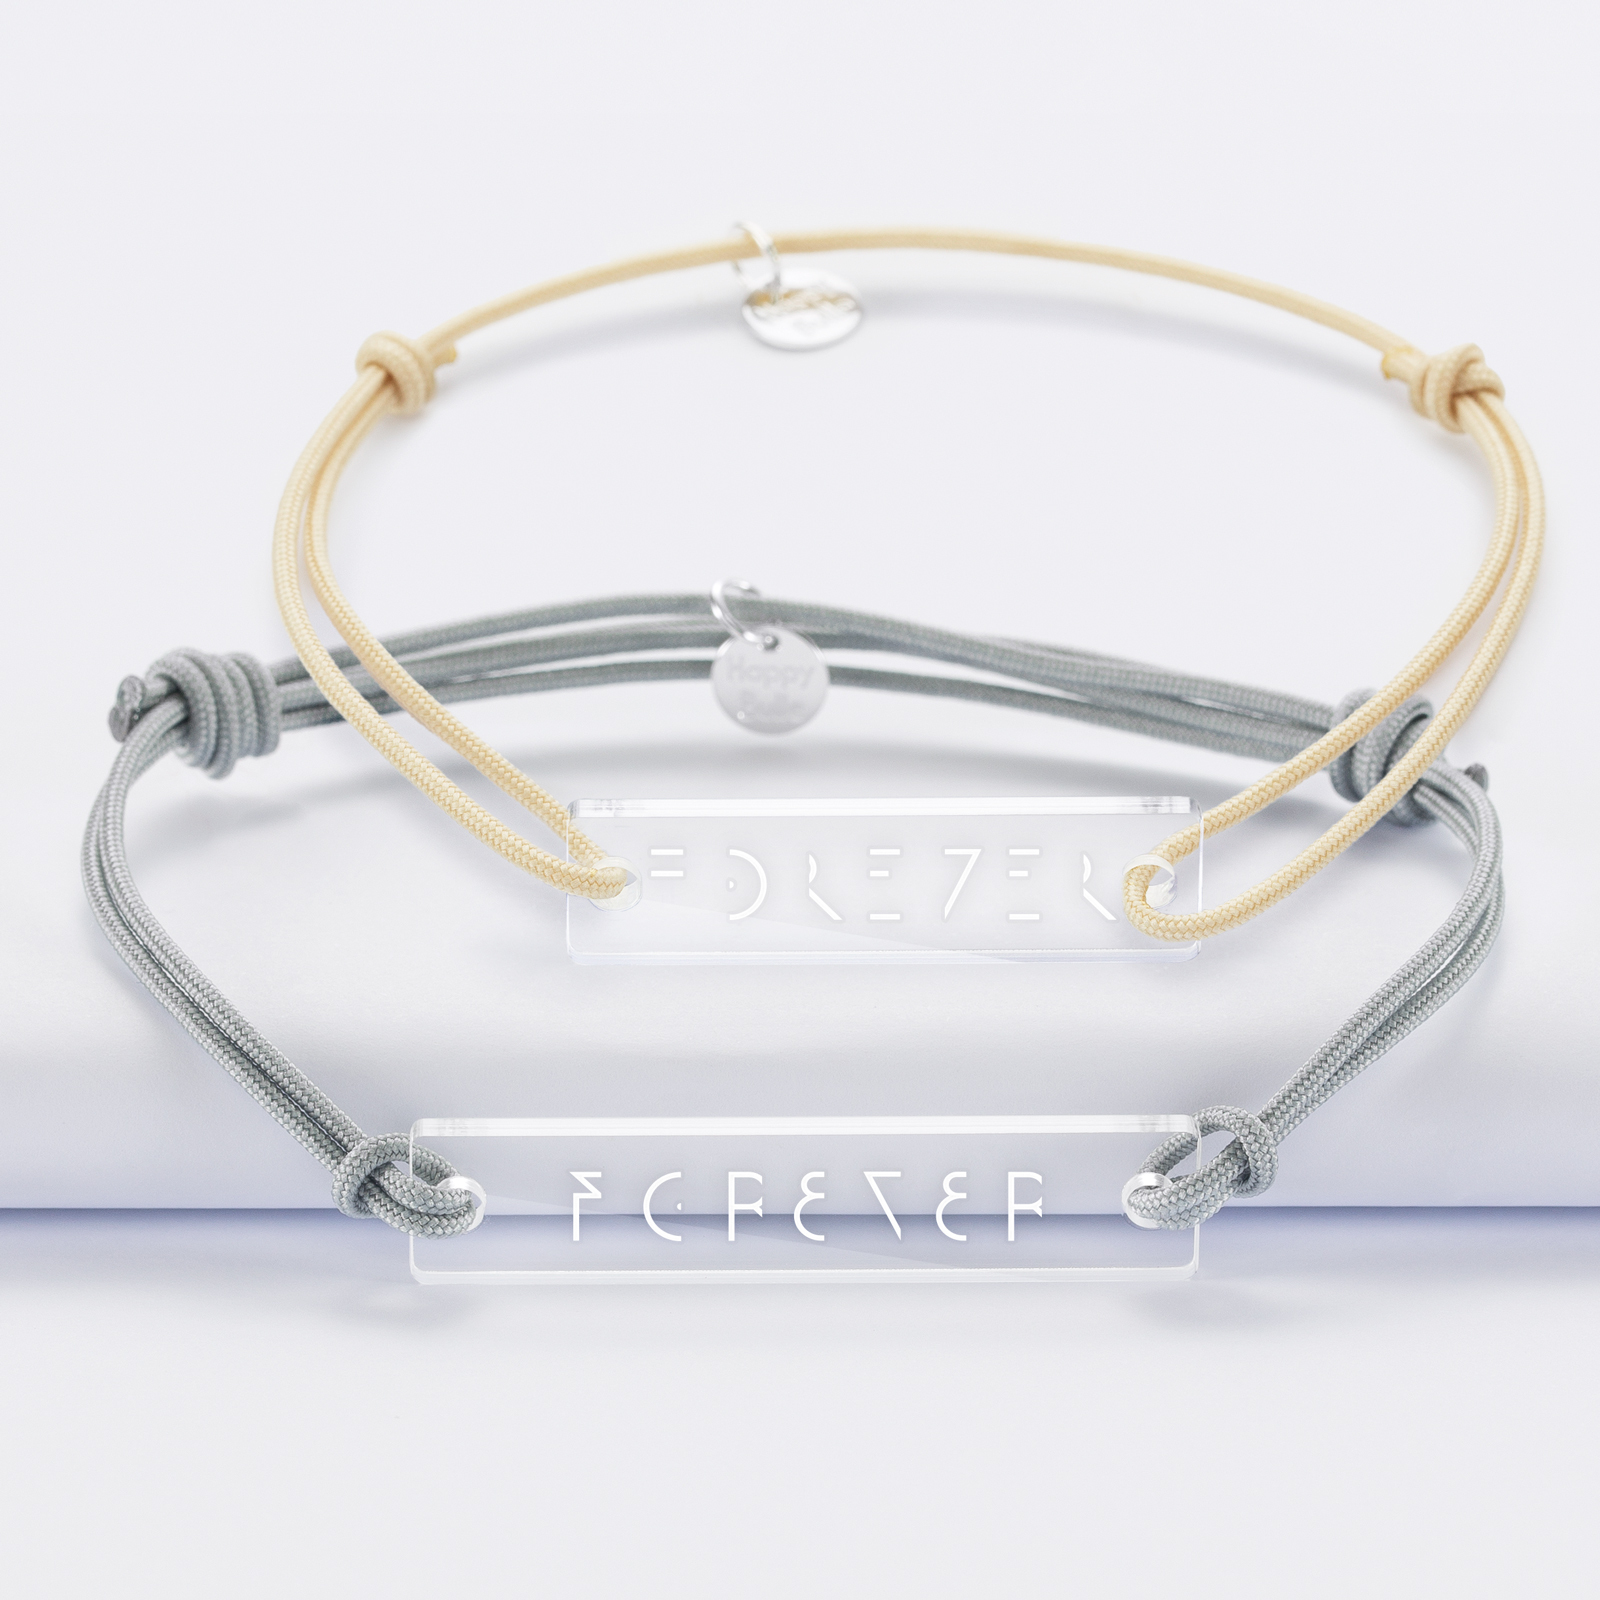 Duo de bracelets inséparables médailles gravées acrylique - Edition spéciale "Forever" - 1